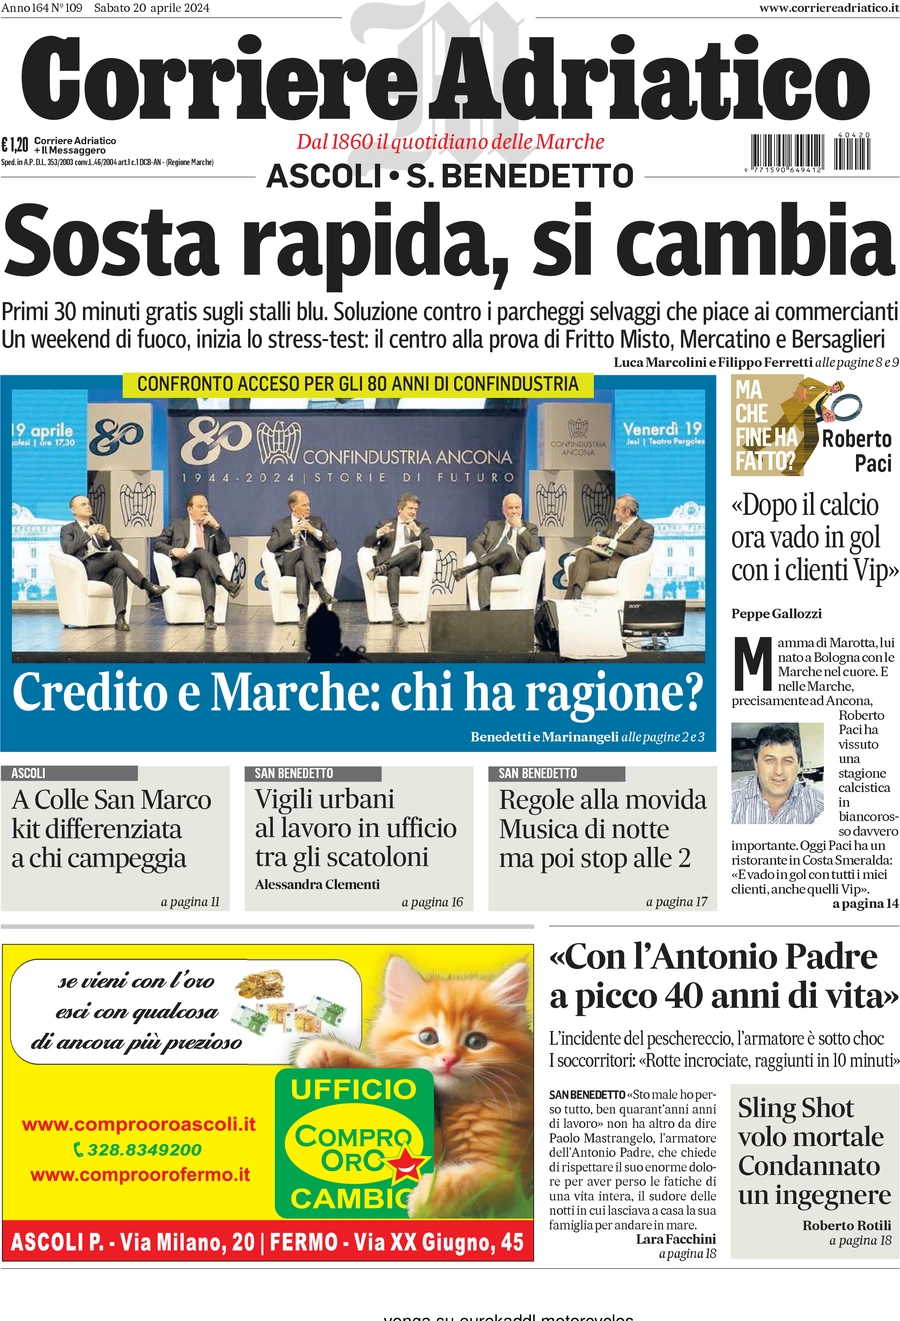 anteprima della prima pagina di corriere-adriatico-ascoli del 20/04/2024